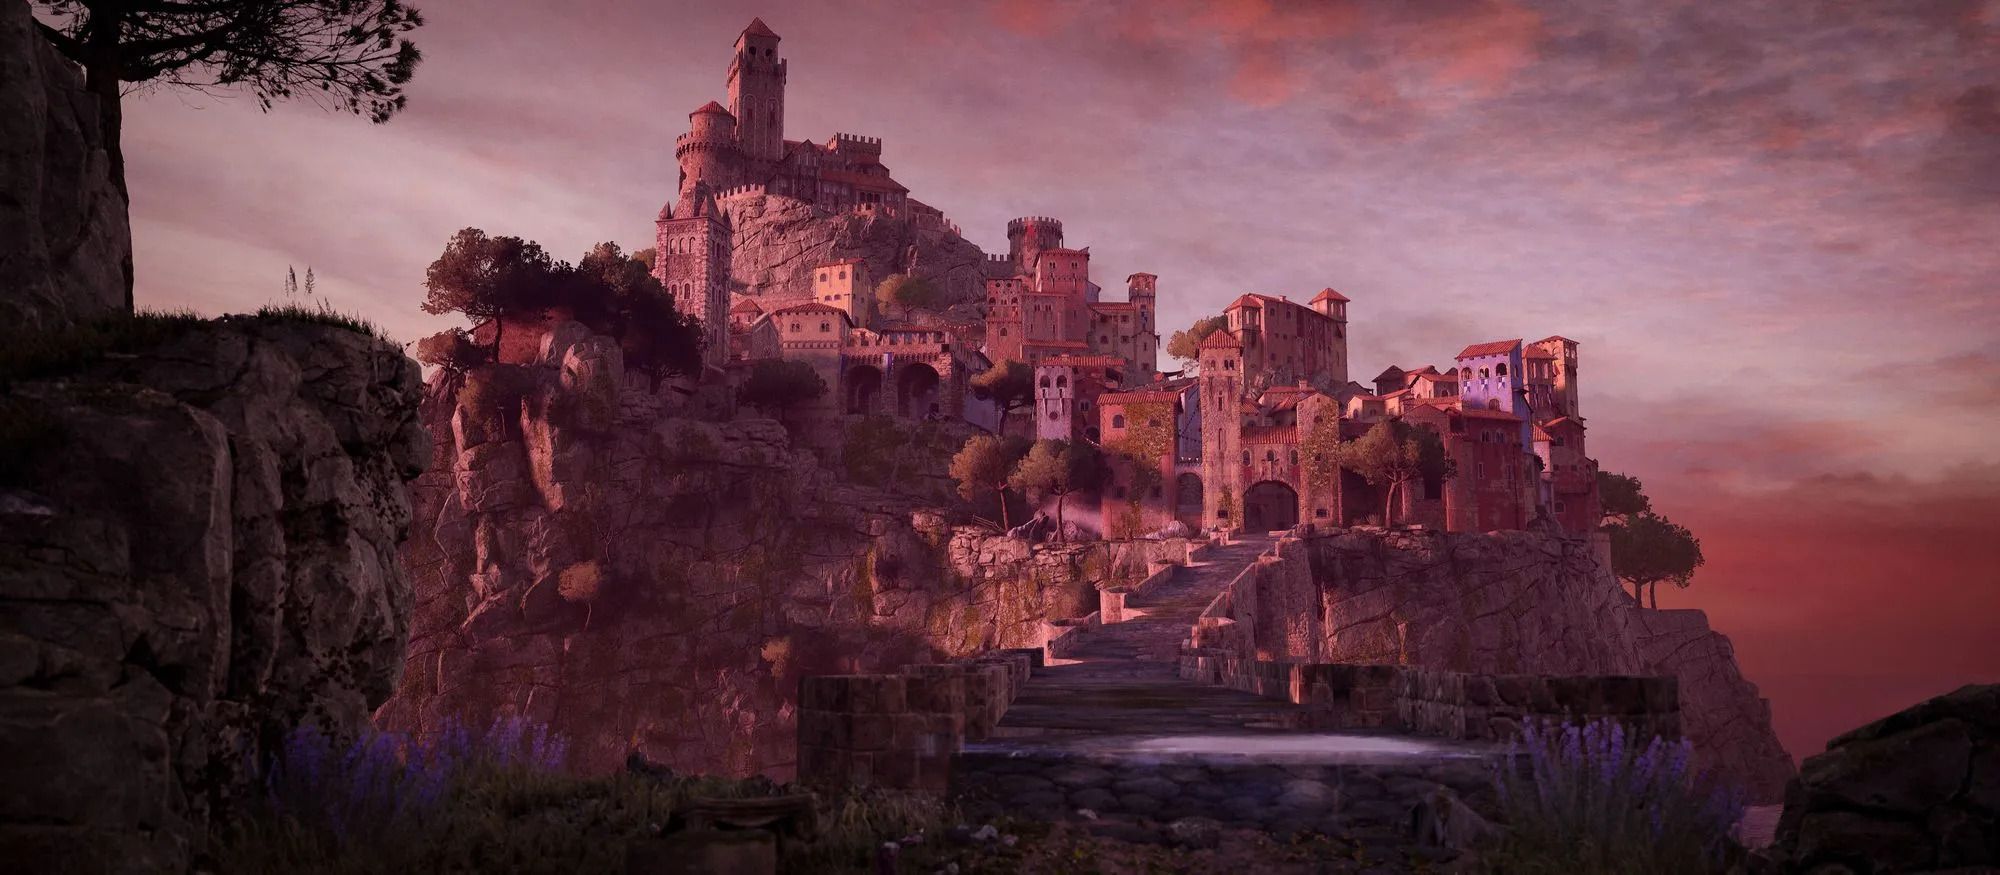 Enotria - The Last Song: il souls-like ambientato in Italia per gli amanti del gaming e del turismo